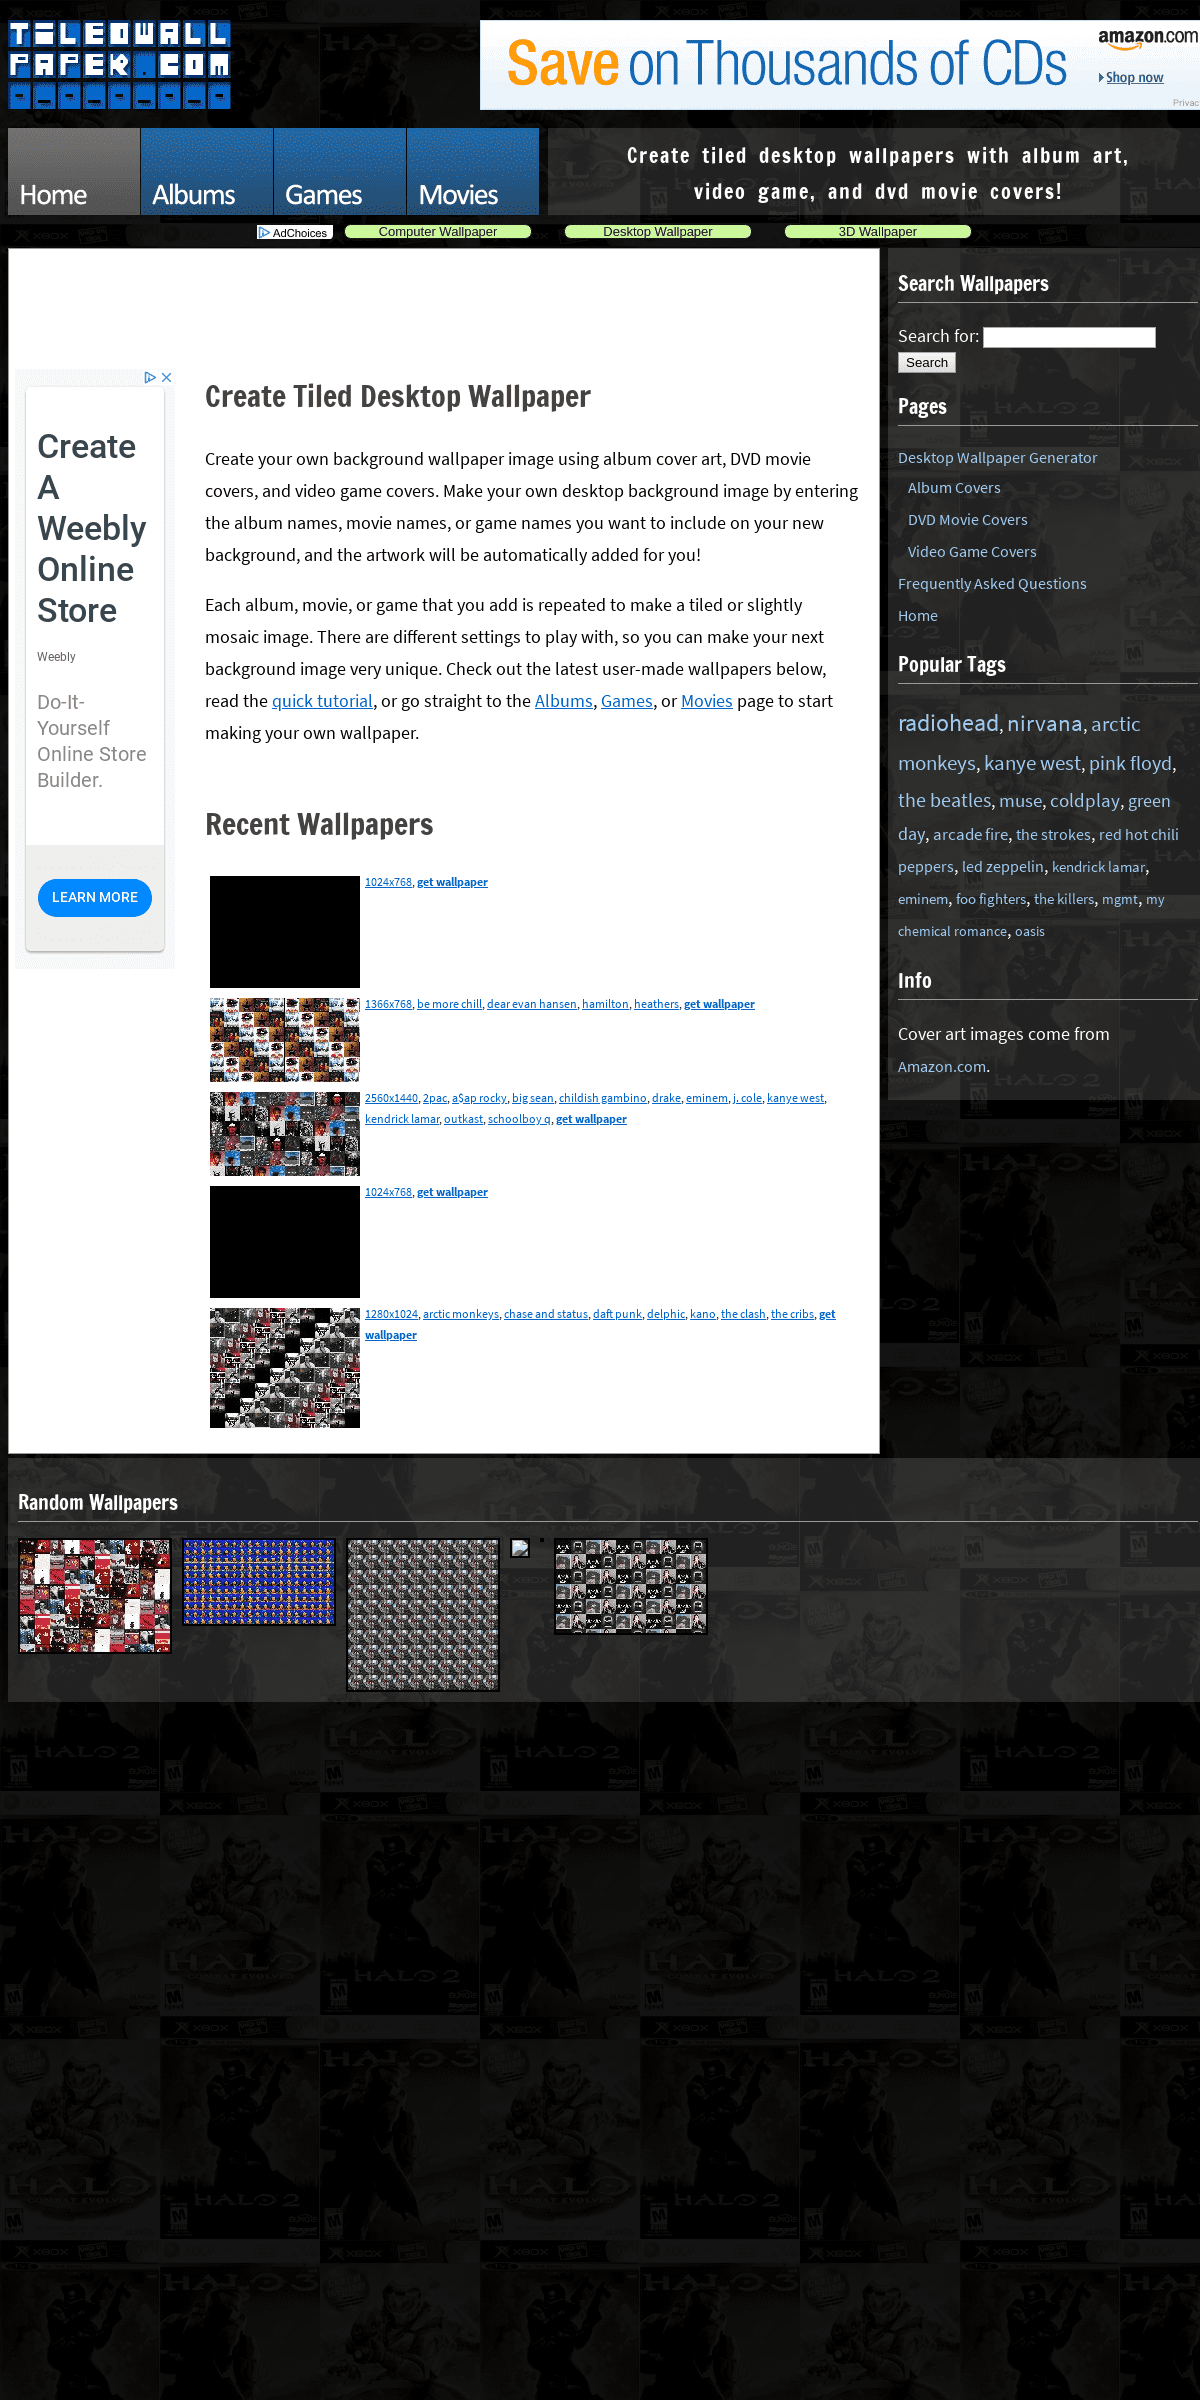 A complete backup of tiledwallpaper.com